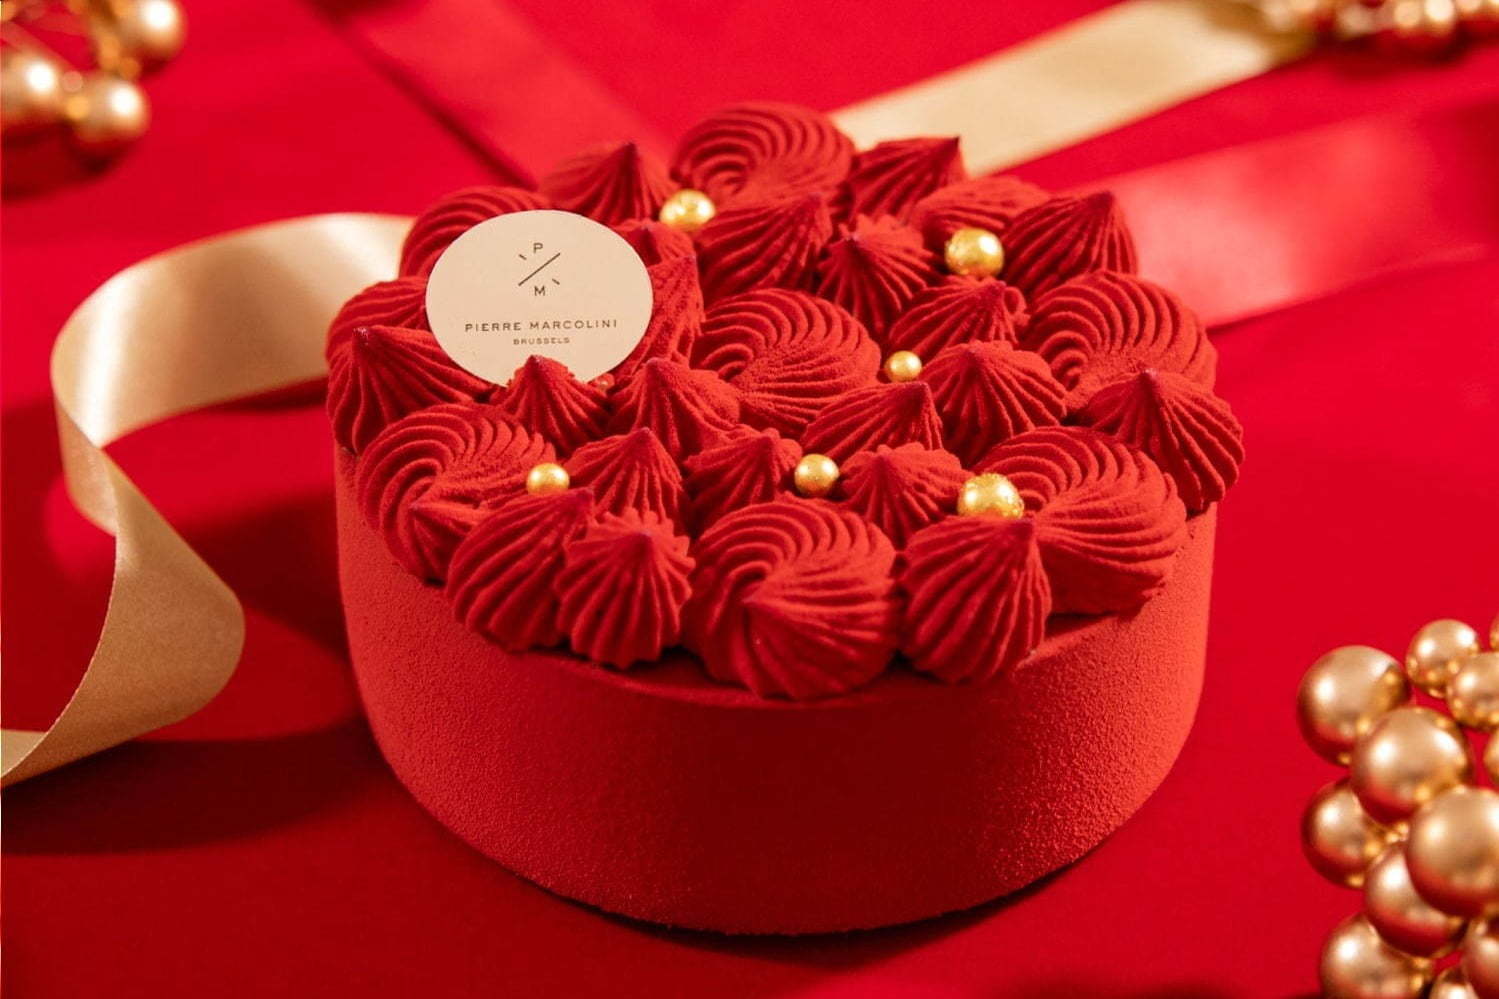 ジャン ポール エヴァンのクリスマスケーキ ポップアート や 音楽 を表現したチョコレートケーキ ファッションプレス